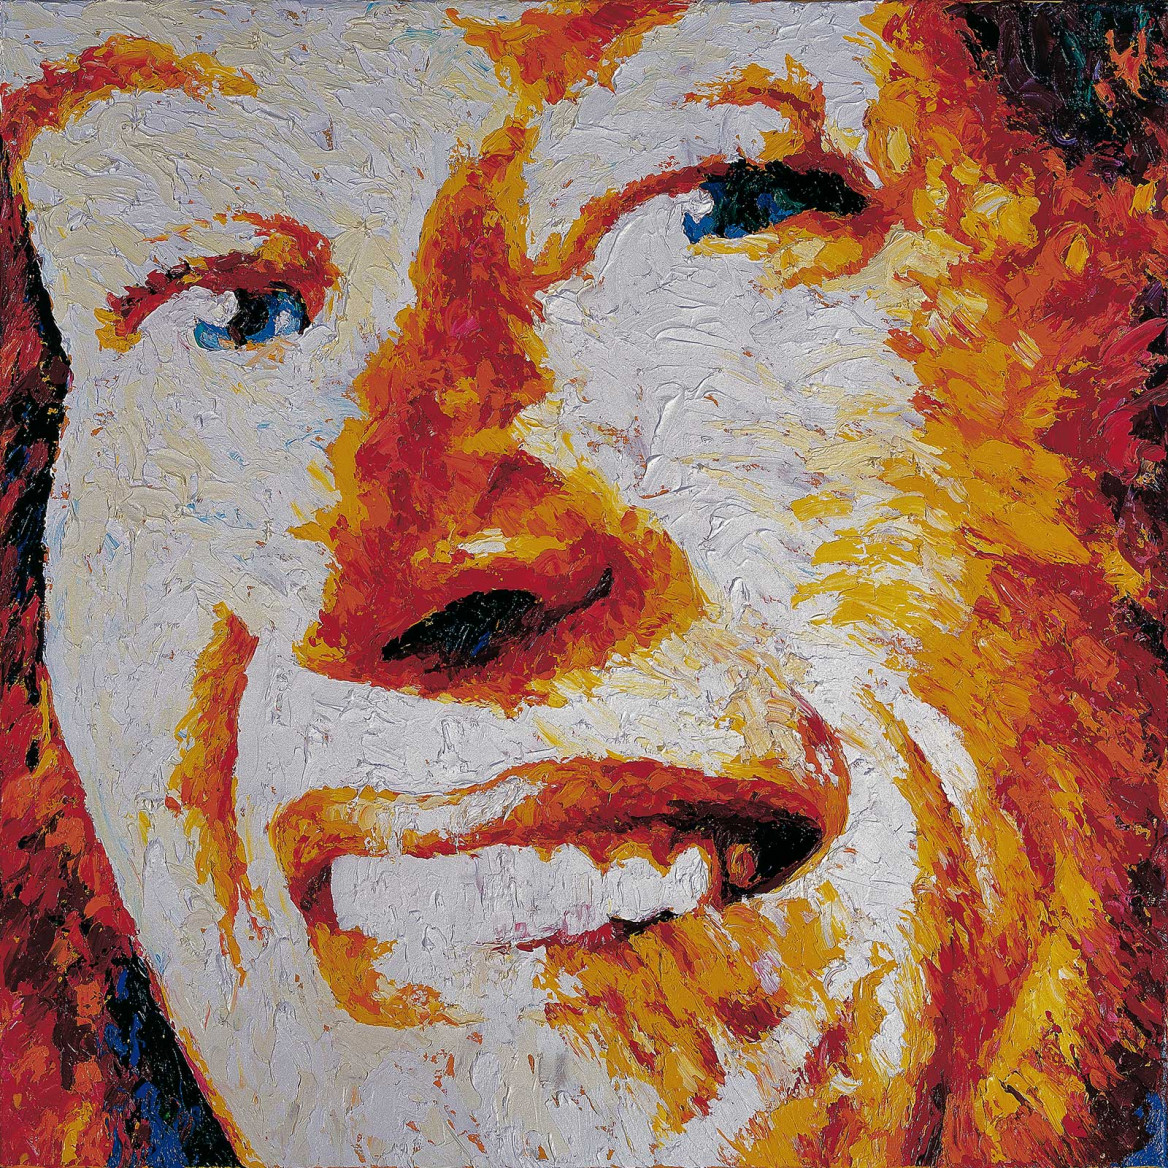 Portrait of Christa in red and orange painted with palette knife in oil on canvas; Porträt von Christa S. in rot und orange gemalt in Öl mit Spachtelmesser auf Leinwand